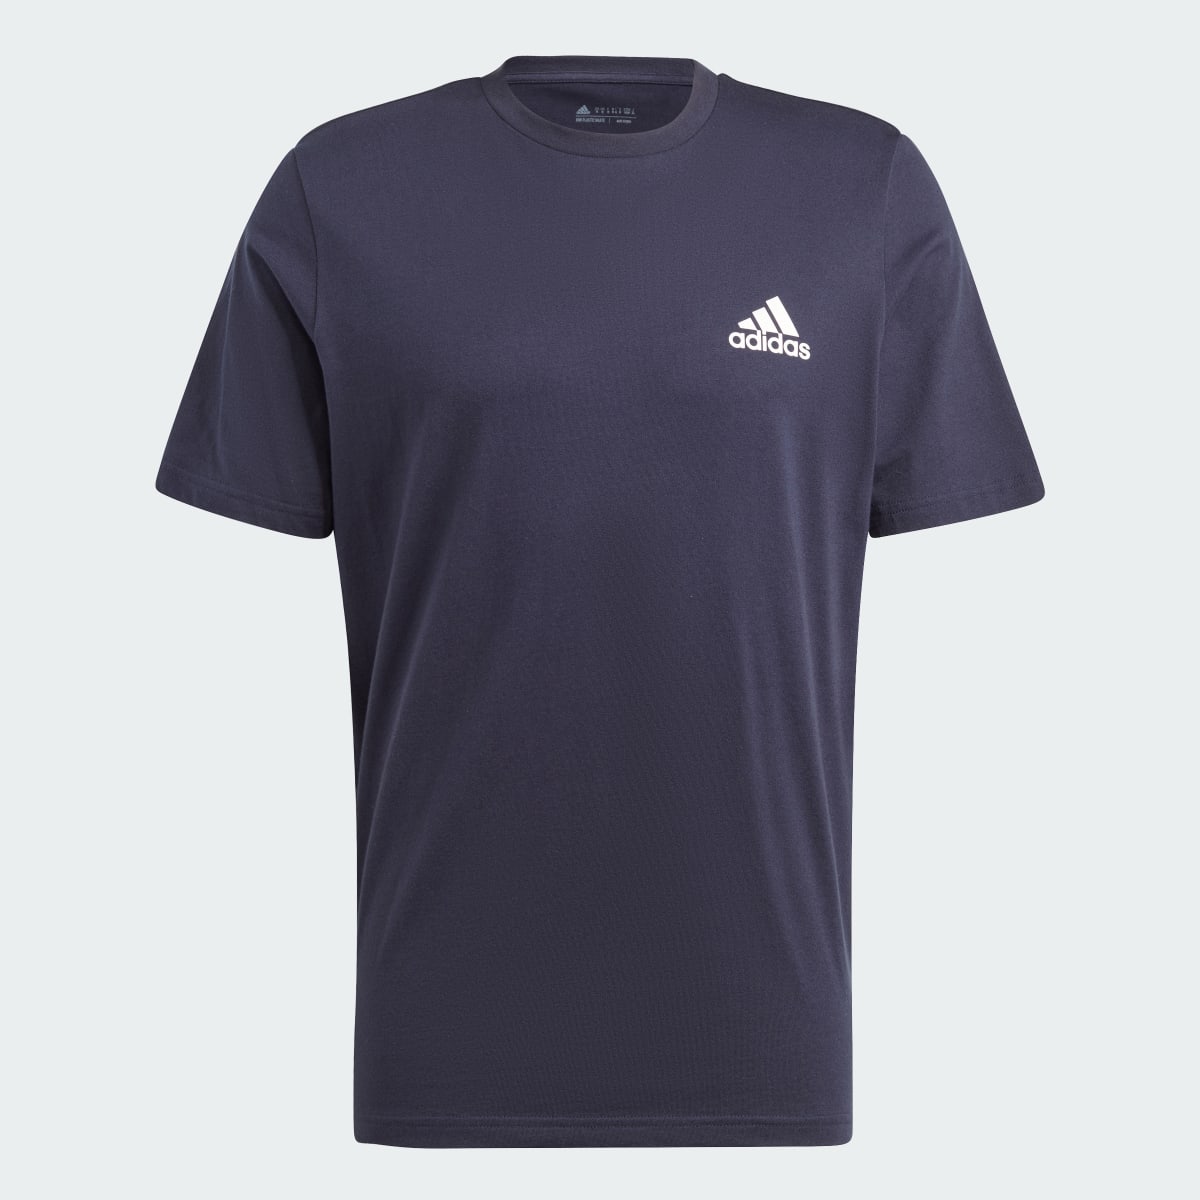 Adidas T-shirt Tiro Wordmark Graphic. 6